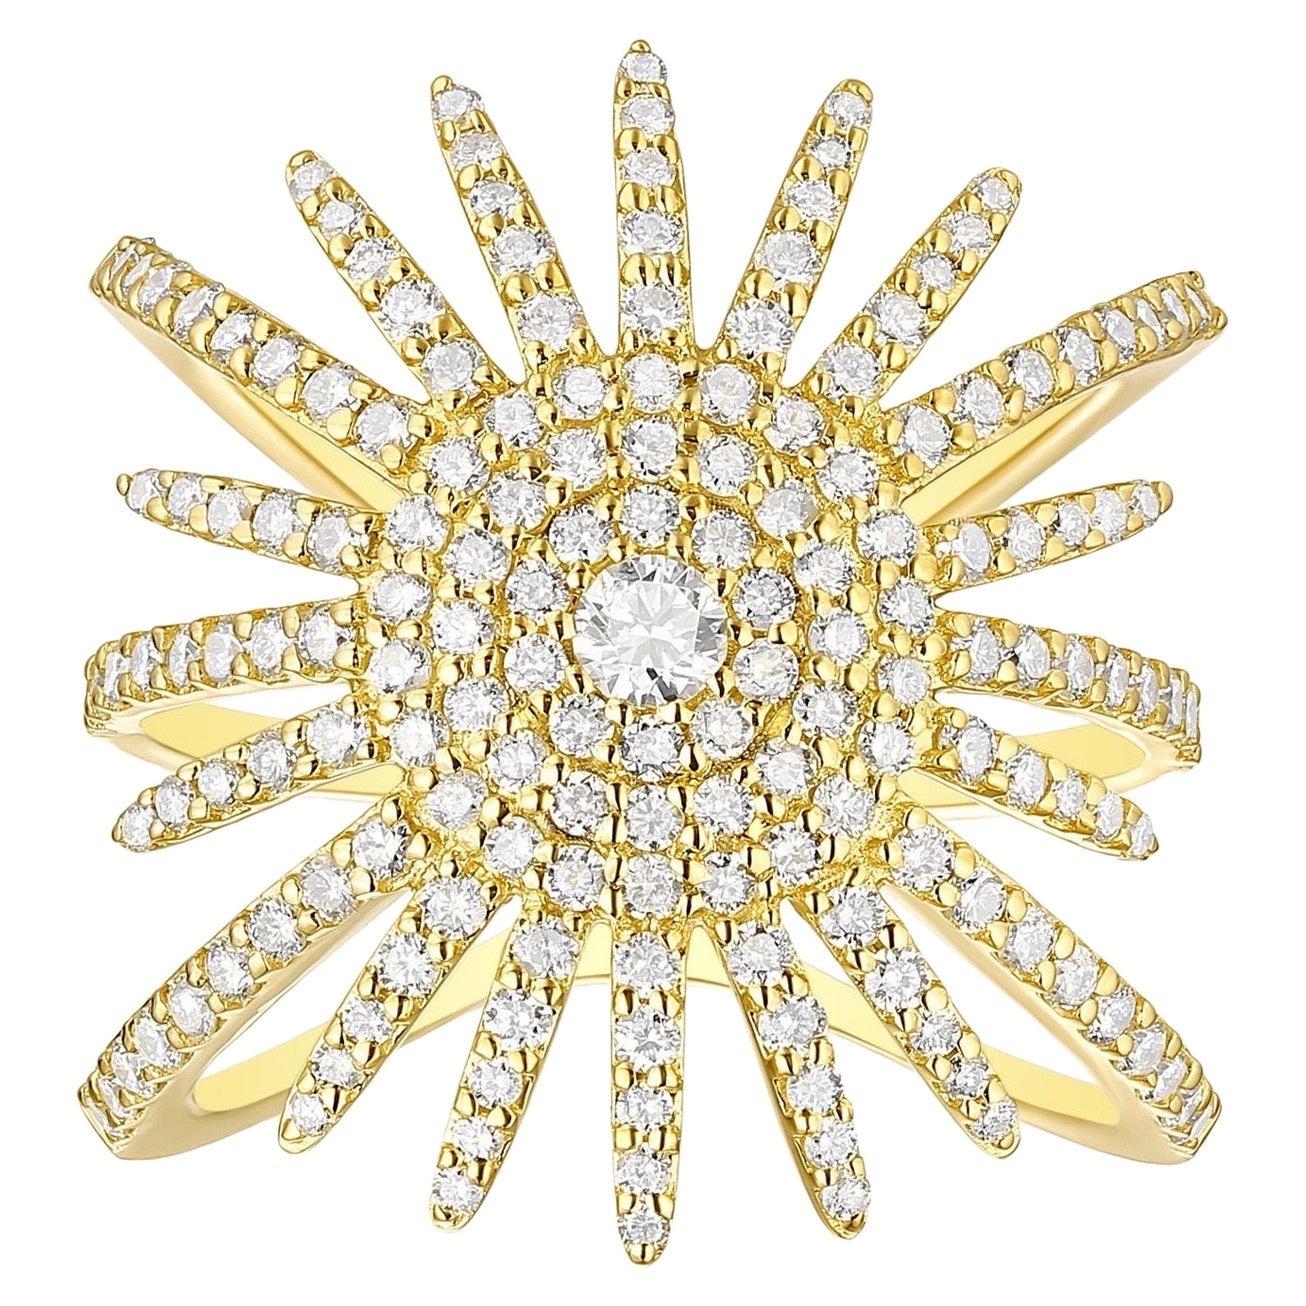 For Sale:  18 Karat Gold Diamond Starburst Ring